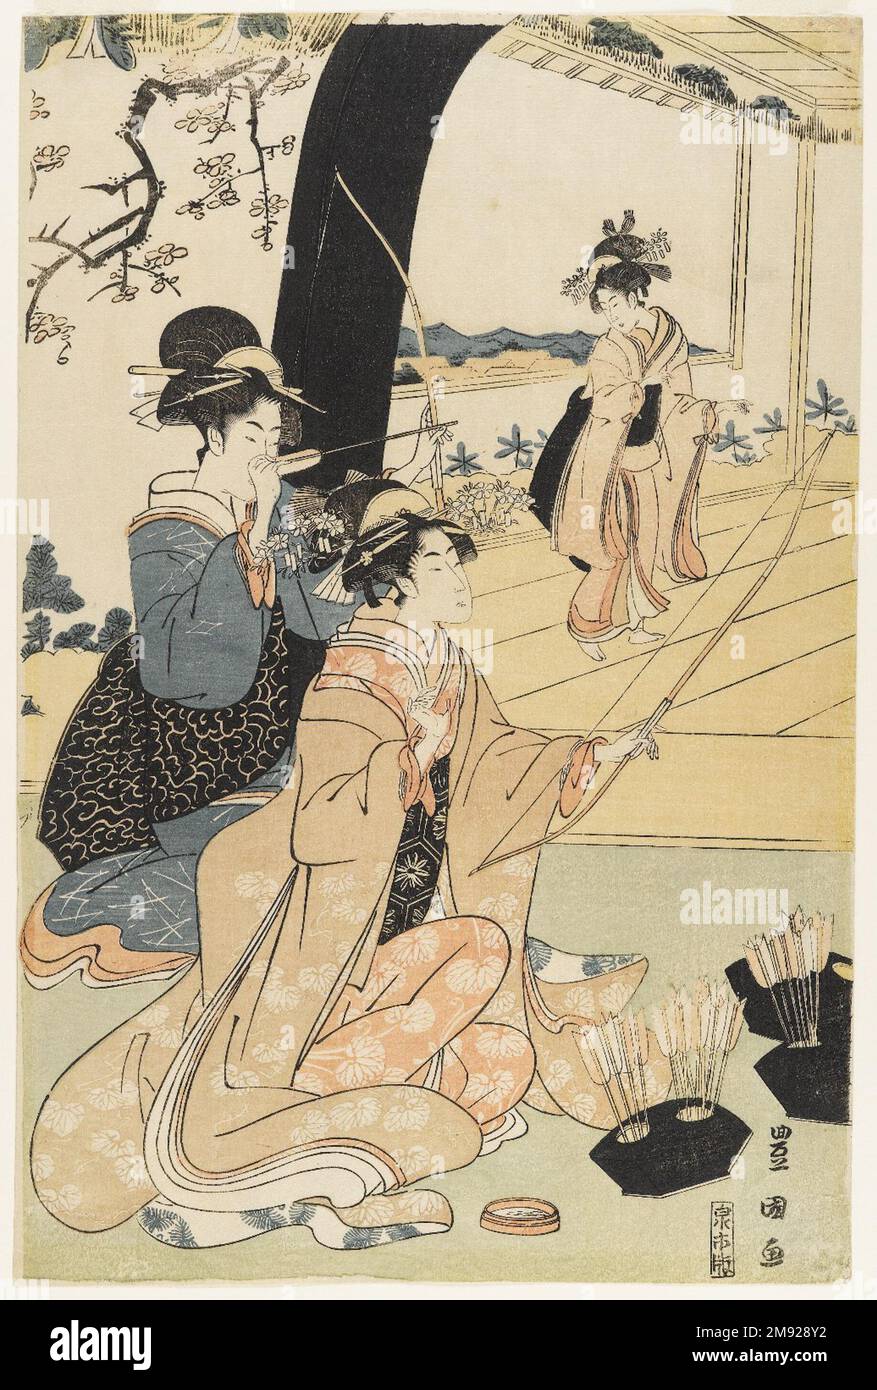 Giovani Samurai e presenze femminili che praticano la Tiro con l'Arco, metà di un Diptych Utagawa Toyokuni i (giapponese, 1769-1825). Giovani Samurai e prescieri femminili che praticano la Tiro con l'Arco, metà di un Dittico, ca. 1800. Stampa woodblock, 15 1/8 x 10 pollici (38,4 x 25,4 cm). Oltre alle sue celebri stampe d'attore kabuki, Toyokuni eccelse a immagini di belle donne, incorporando il tipo di figura lunga e lithe che era entrato in voga con l'opera di Kitagawa Utamaro (1750-1806) e di Torii Kiyonaga (1752-1815) nei decenni precedenti. Il tiro con l'arco era un'attività raffinata associata alla classe dei guerrieri samurai; th Foto Stock